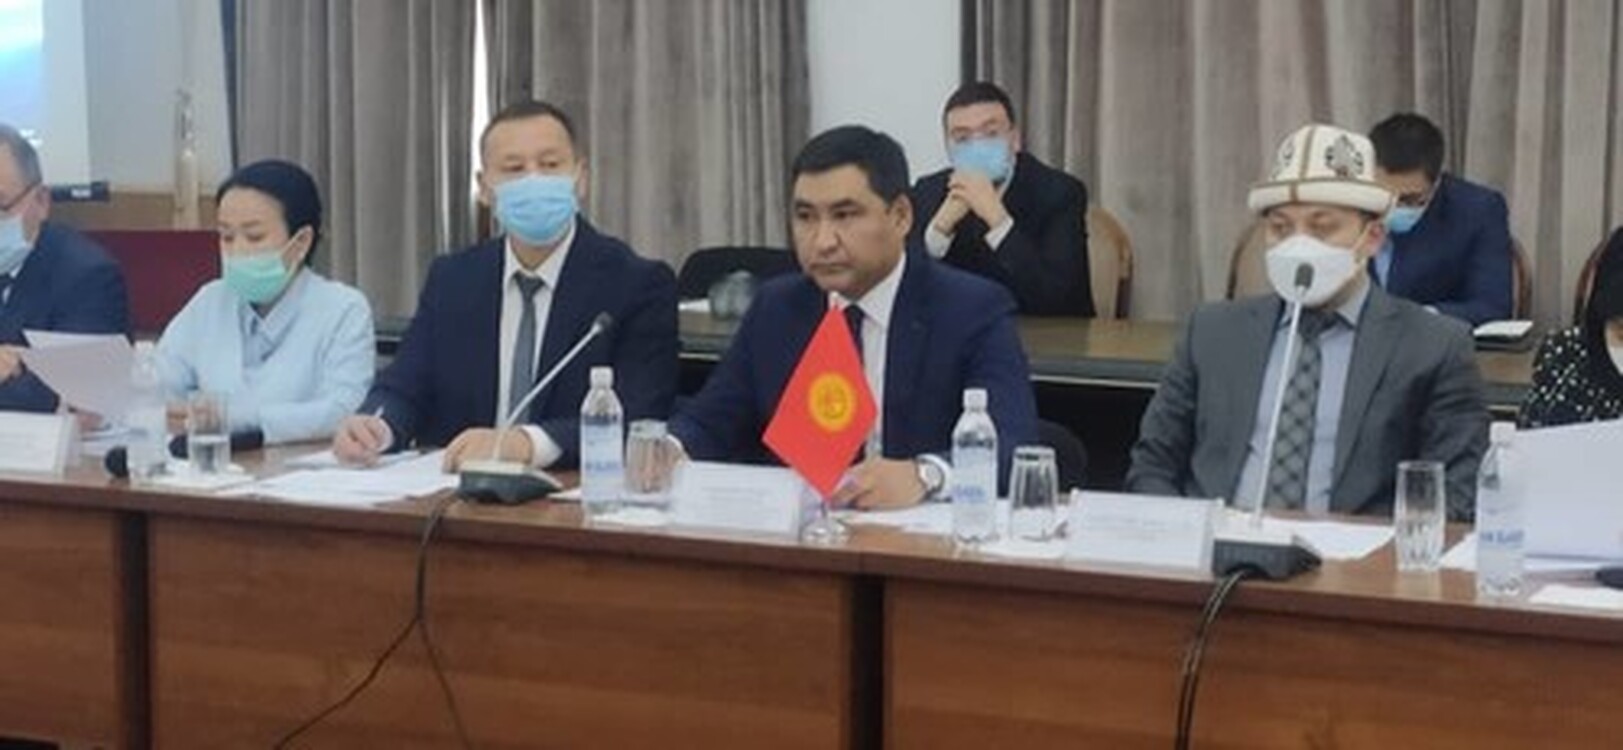 На сегодня кыргызская сторона ожидает практическую реализацию вопроса открытия прямого авиасообщения с Кореей, - министр Д.Амангельдиев   — Today.kg